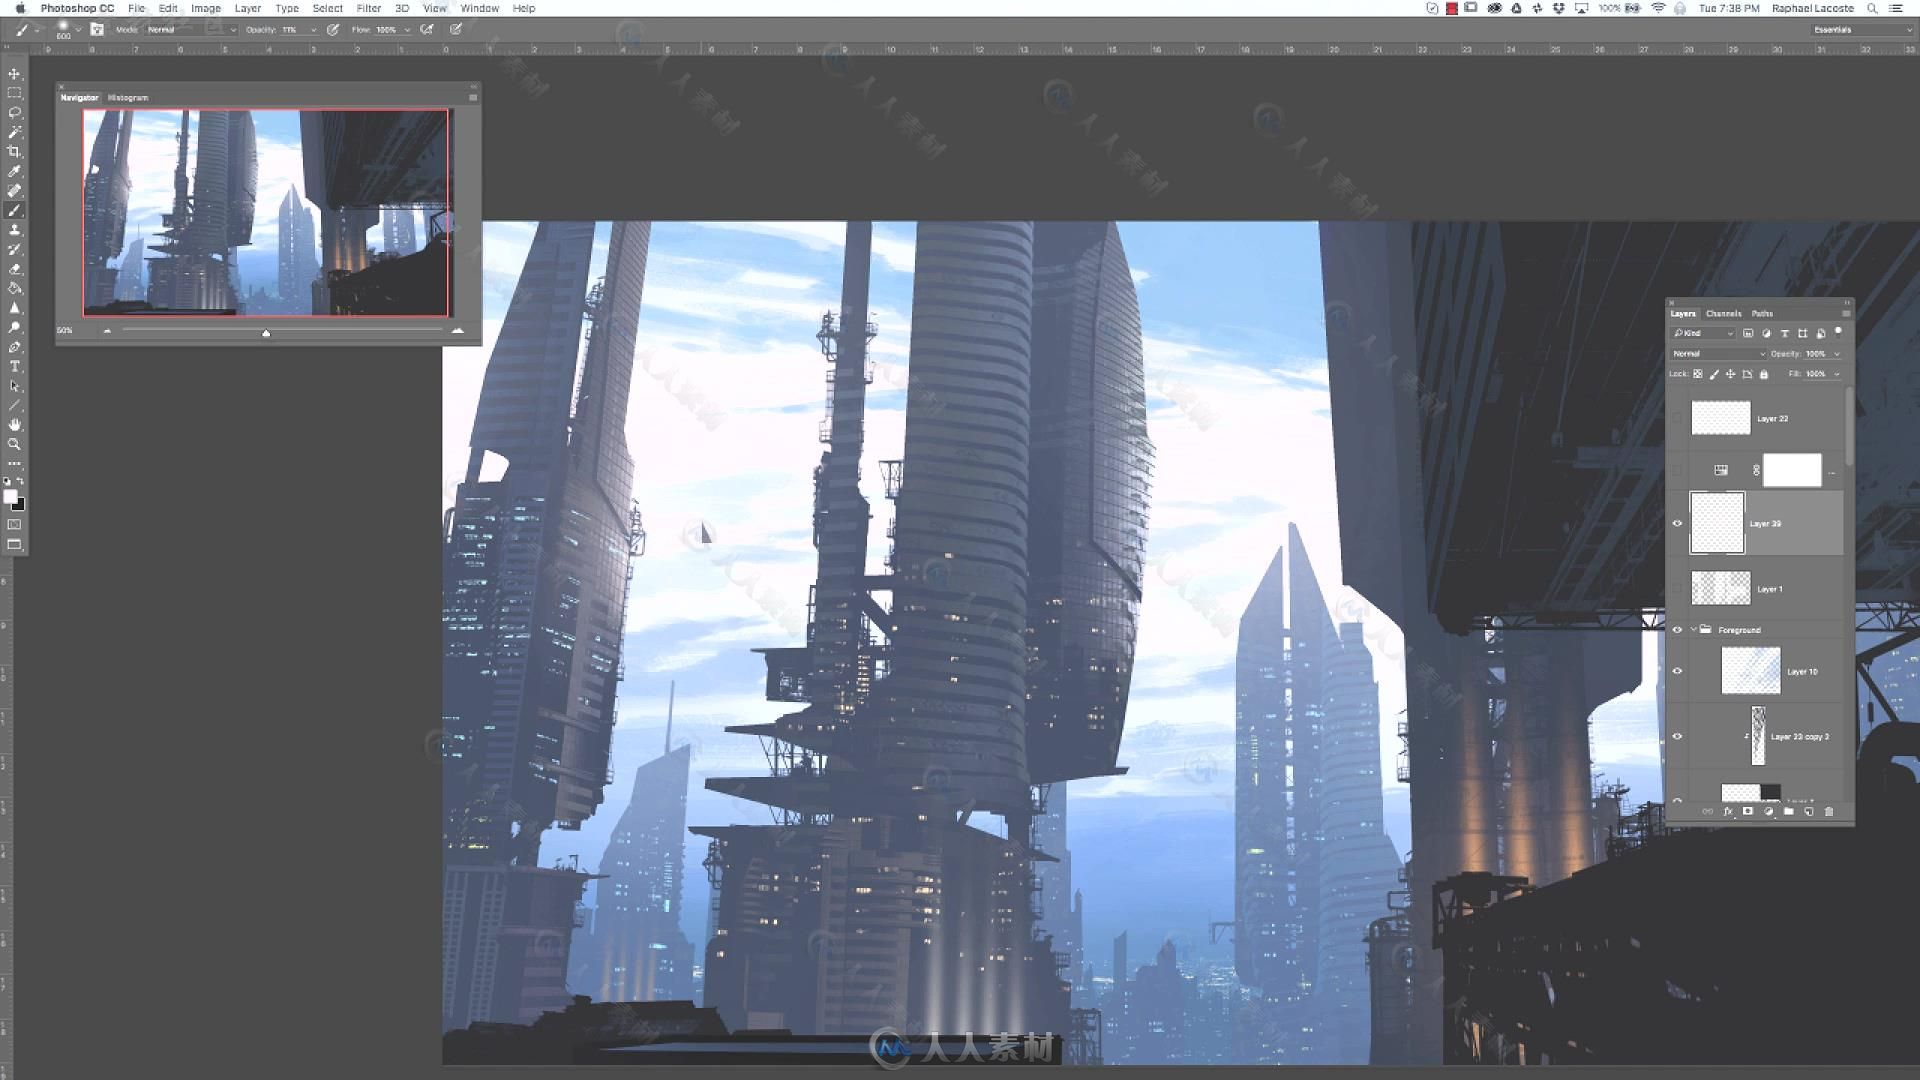 概念科幻城市全景绘制大师级视频教程 GUMROAD LANDING SCENE BY RAPHAEL LACOSTE